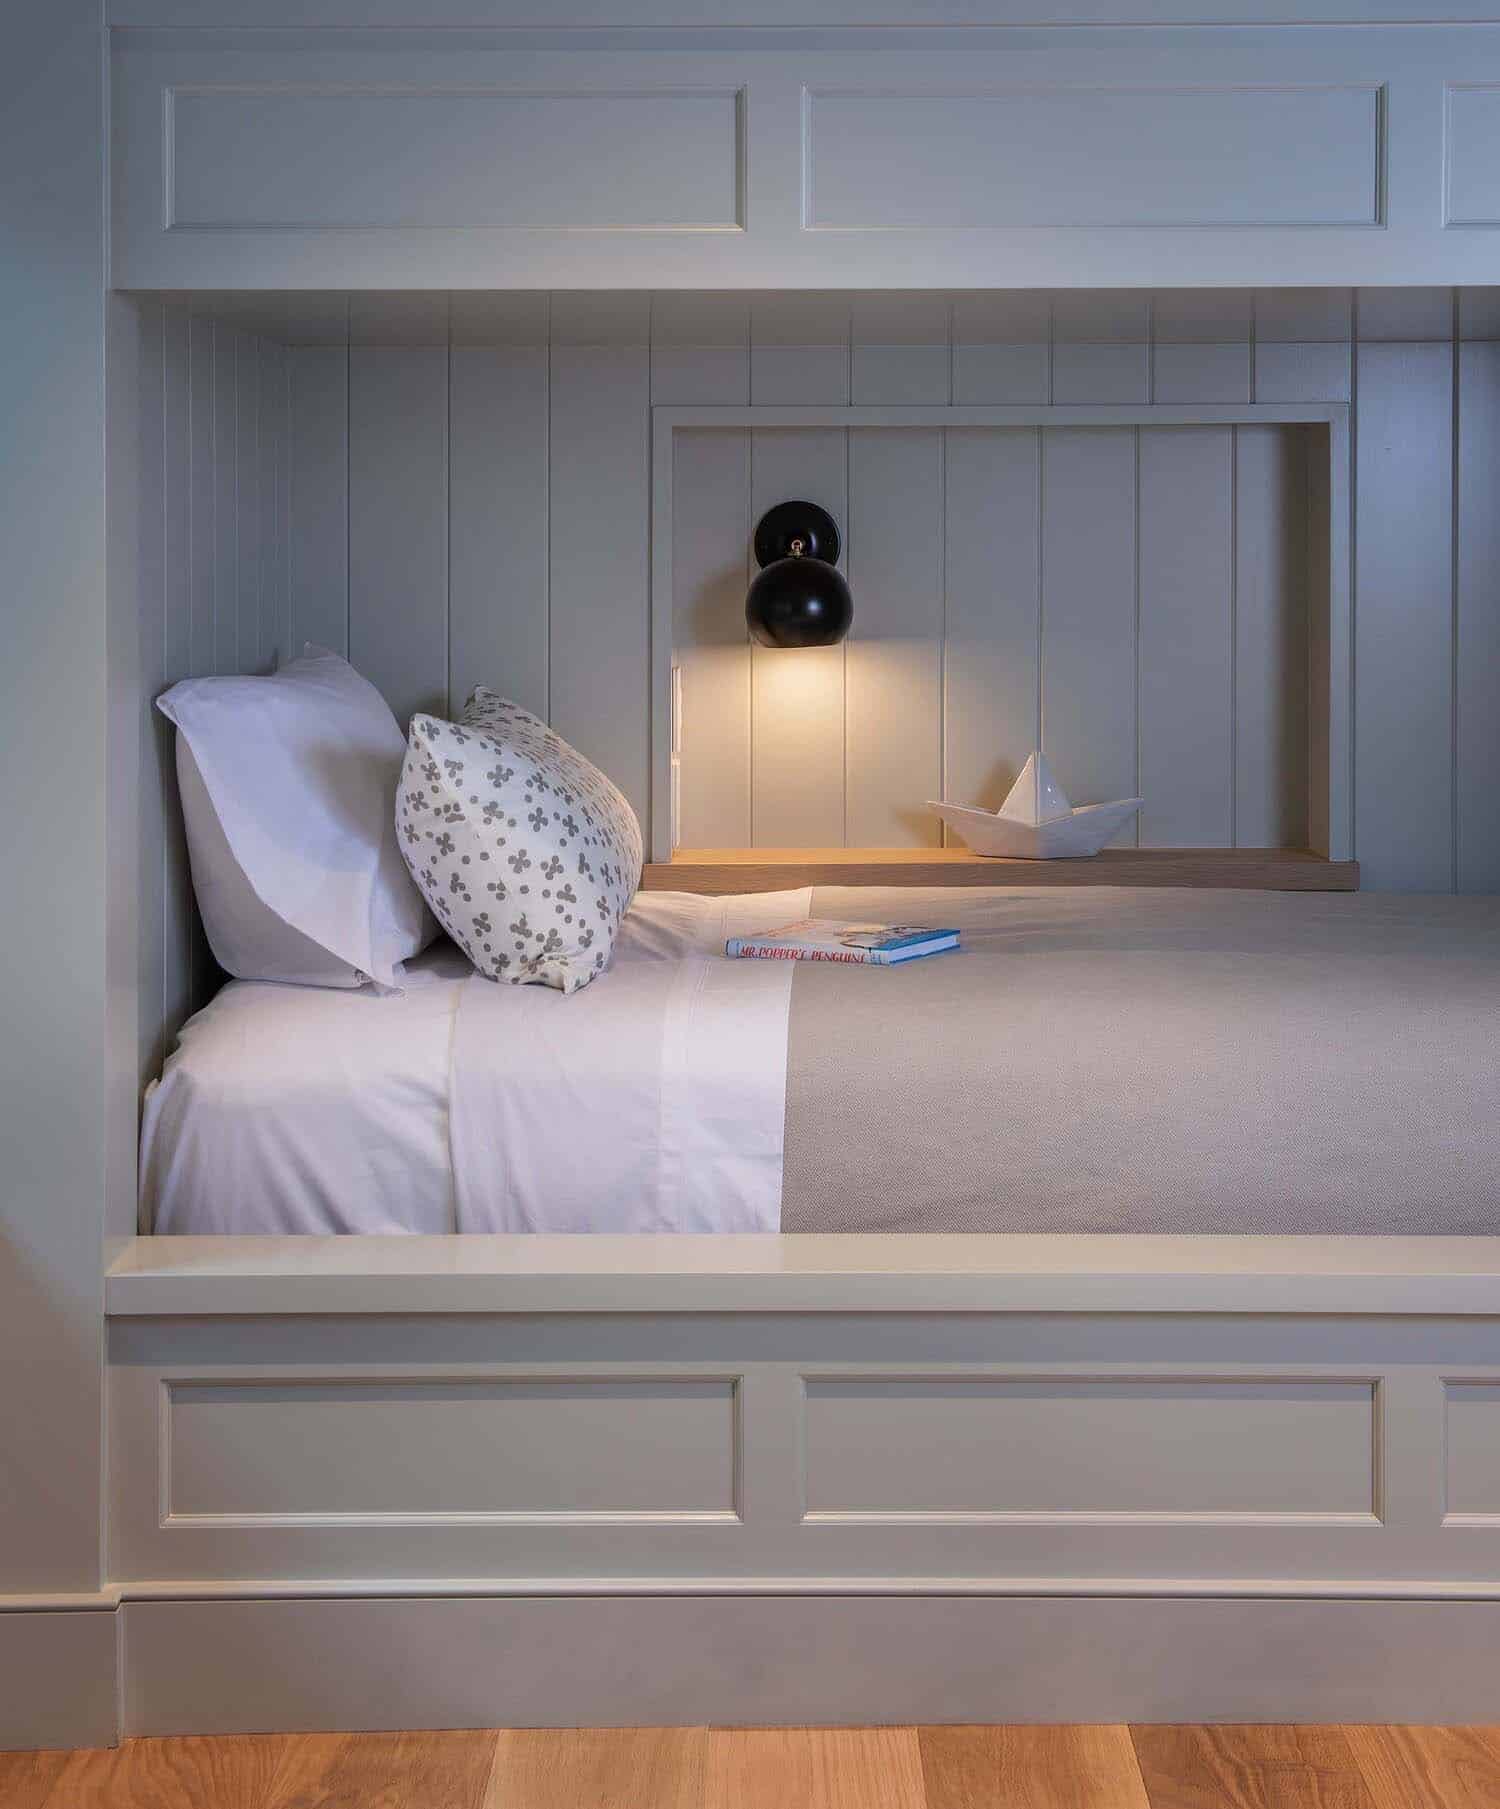 coastal style bunk bedroom